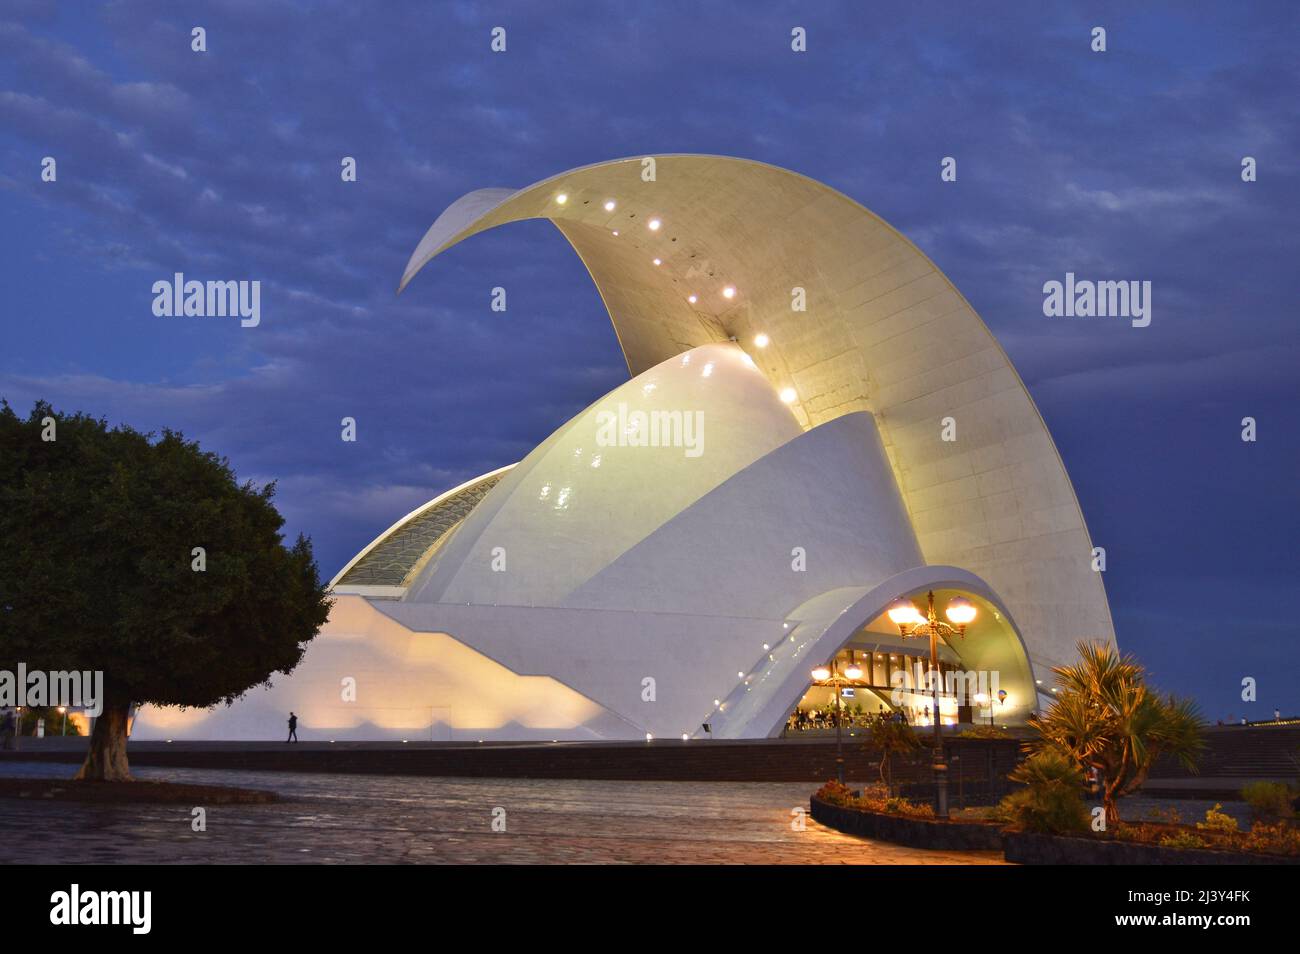 Auditorio de Teneriffa, moderne Wahrzeichen-Architektur beleuchtet in der Nacht in Santa Cruz de Teneriffa Kanarische Inseln. Entworfen von Santiago Calatrava. Stockfoto